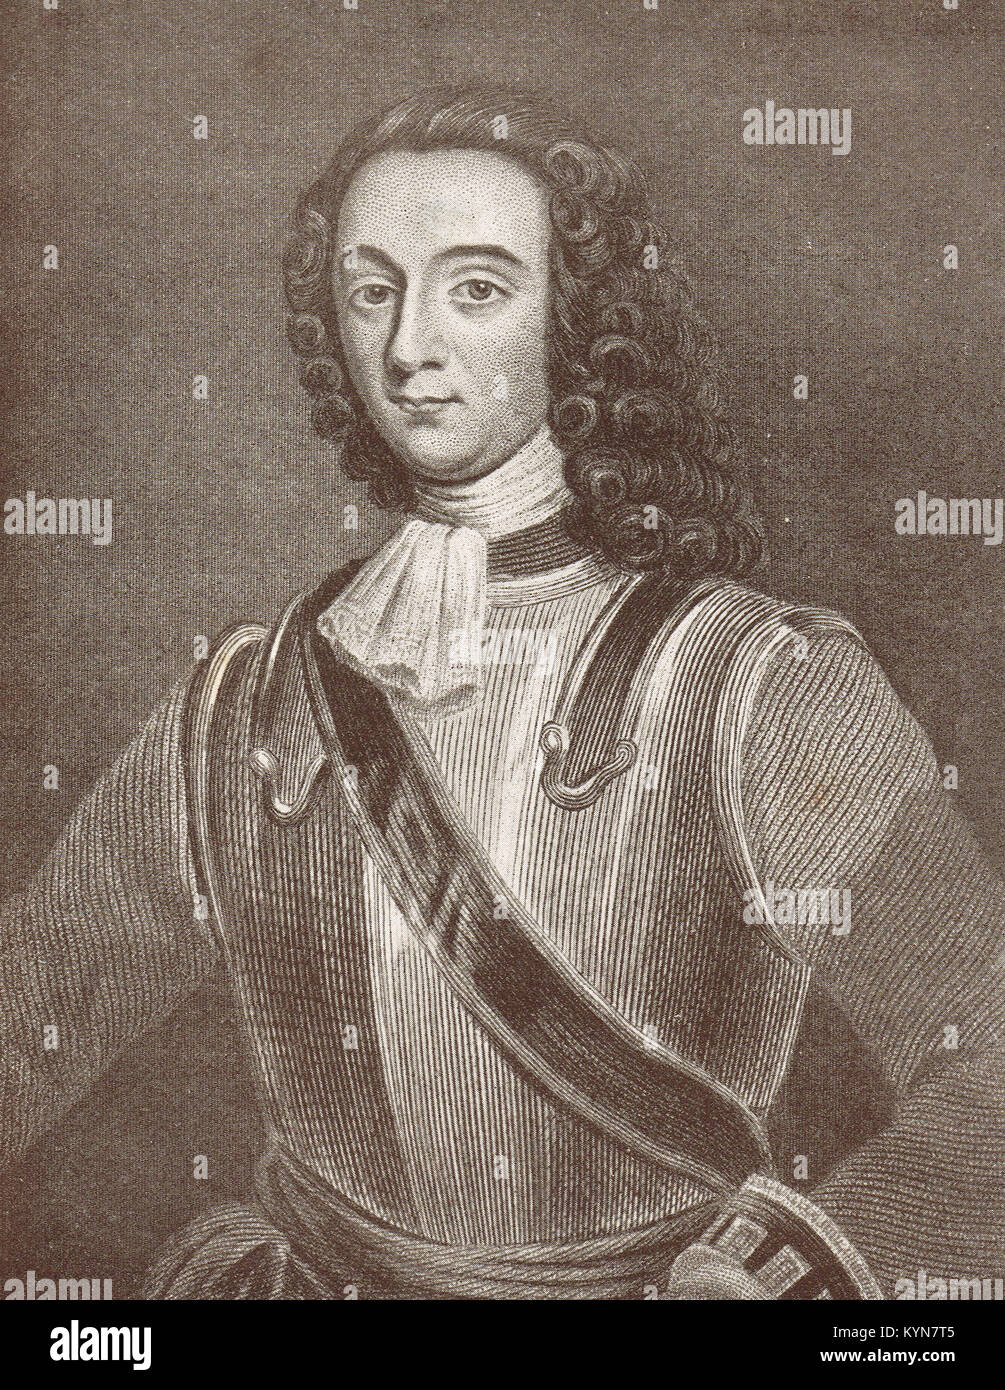 Ratgeber David Cairns, prominenten Verteidiger bei der Belagerung von Derry, 1689 Stockfoto